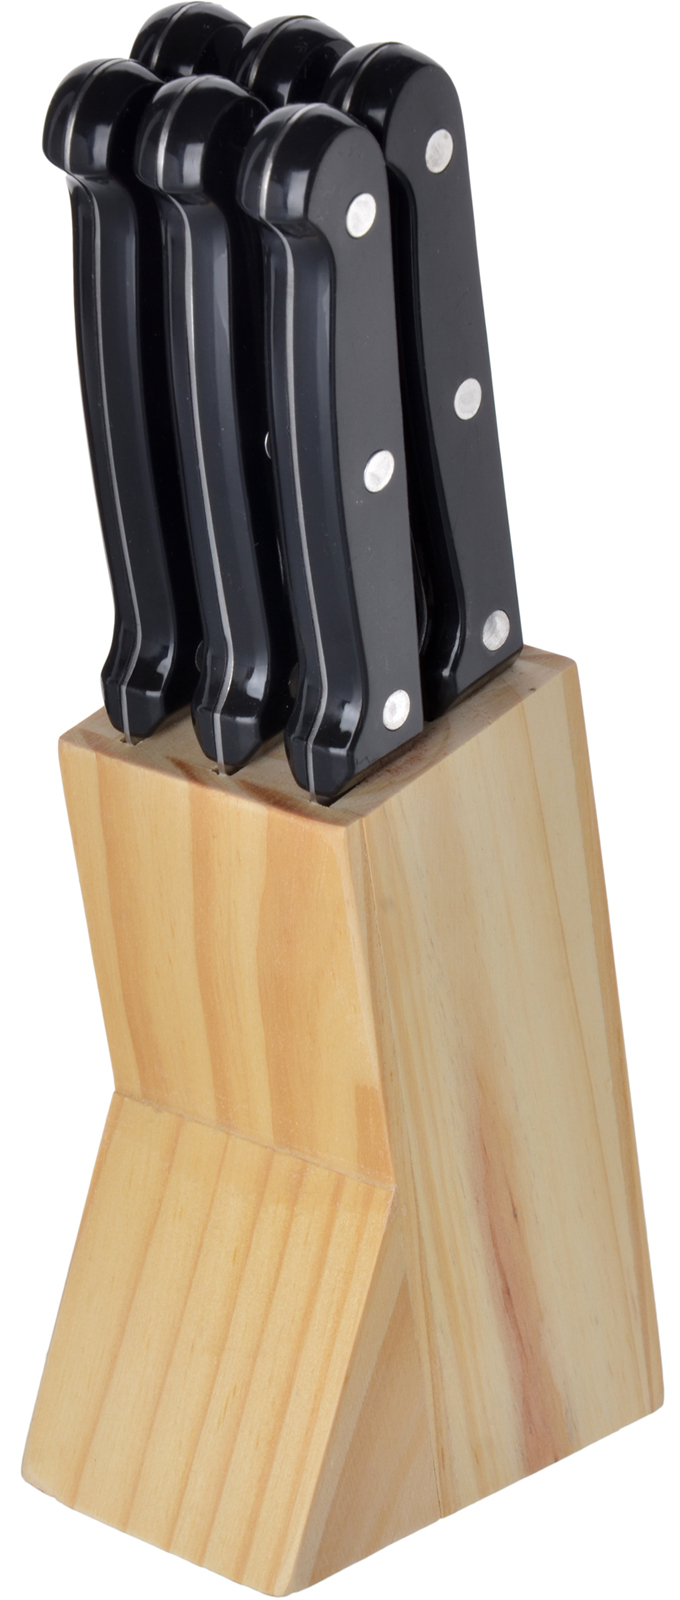 фото Набор ножей Mayer & Boch, цвет: серебристый, черный, 7 шт